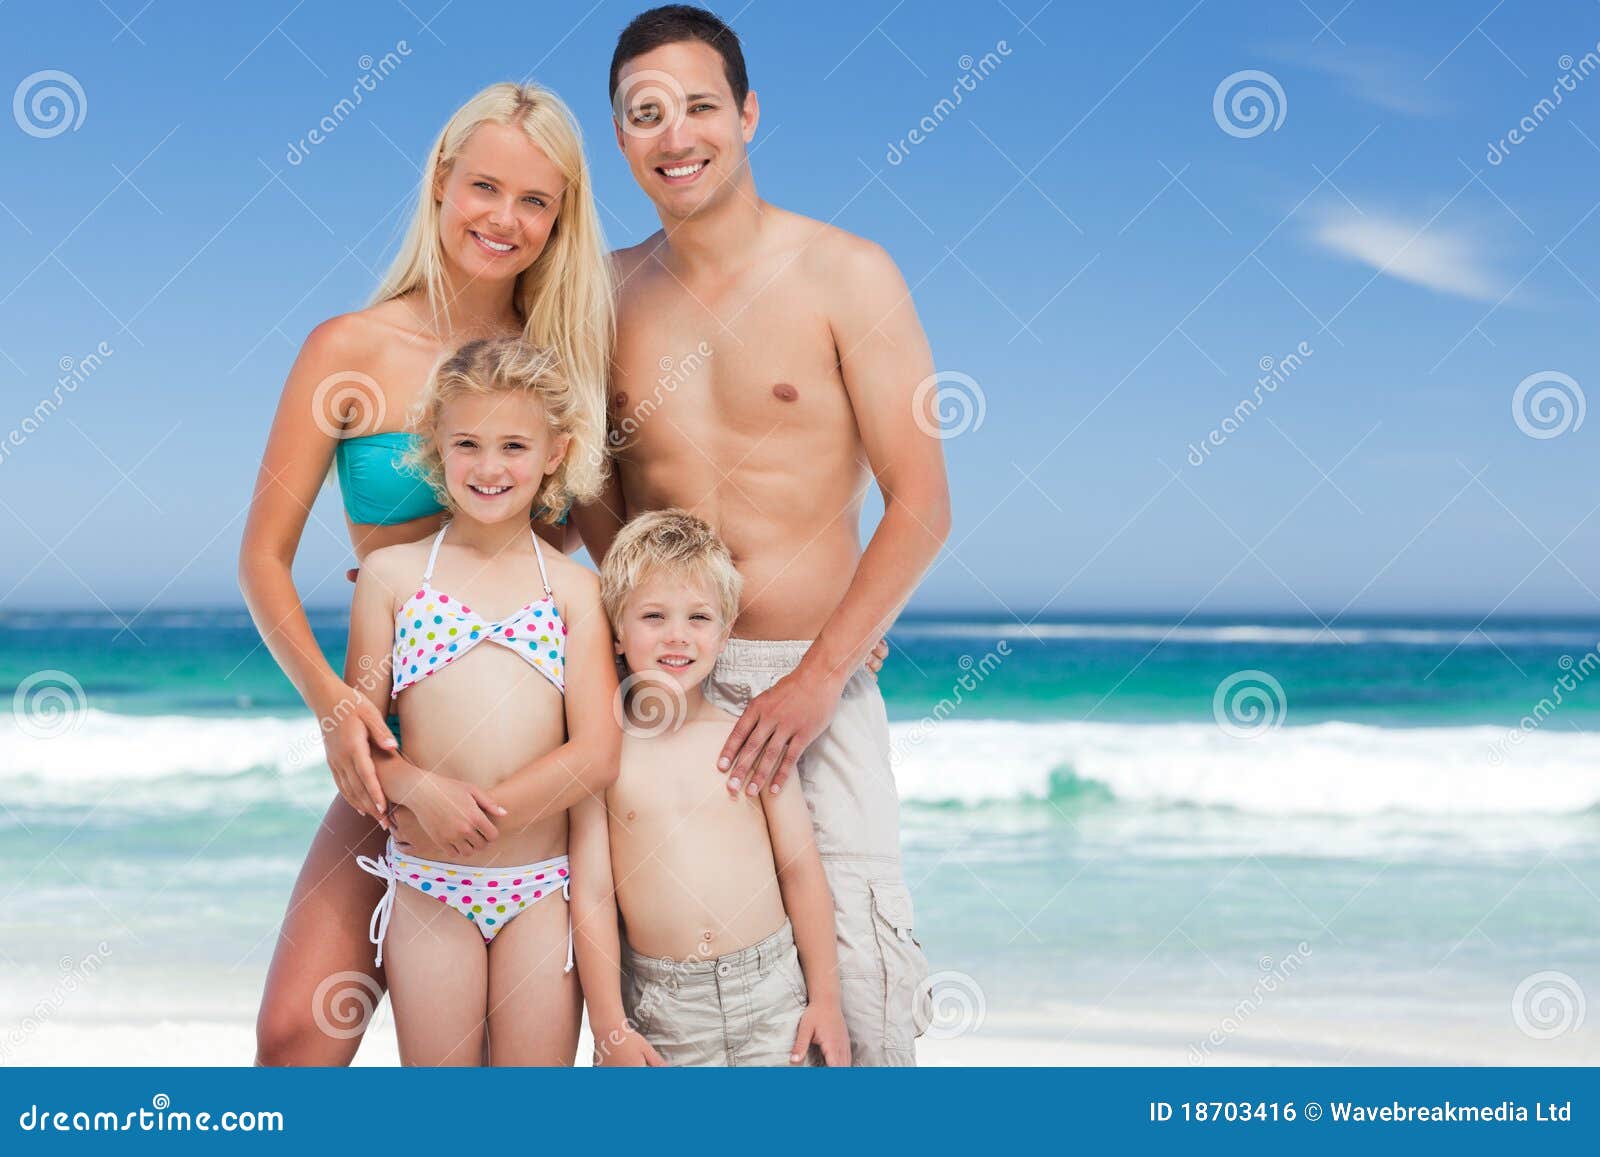 дочка с папой на голом пляже фото 114